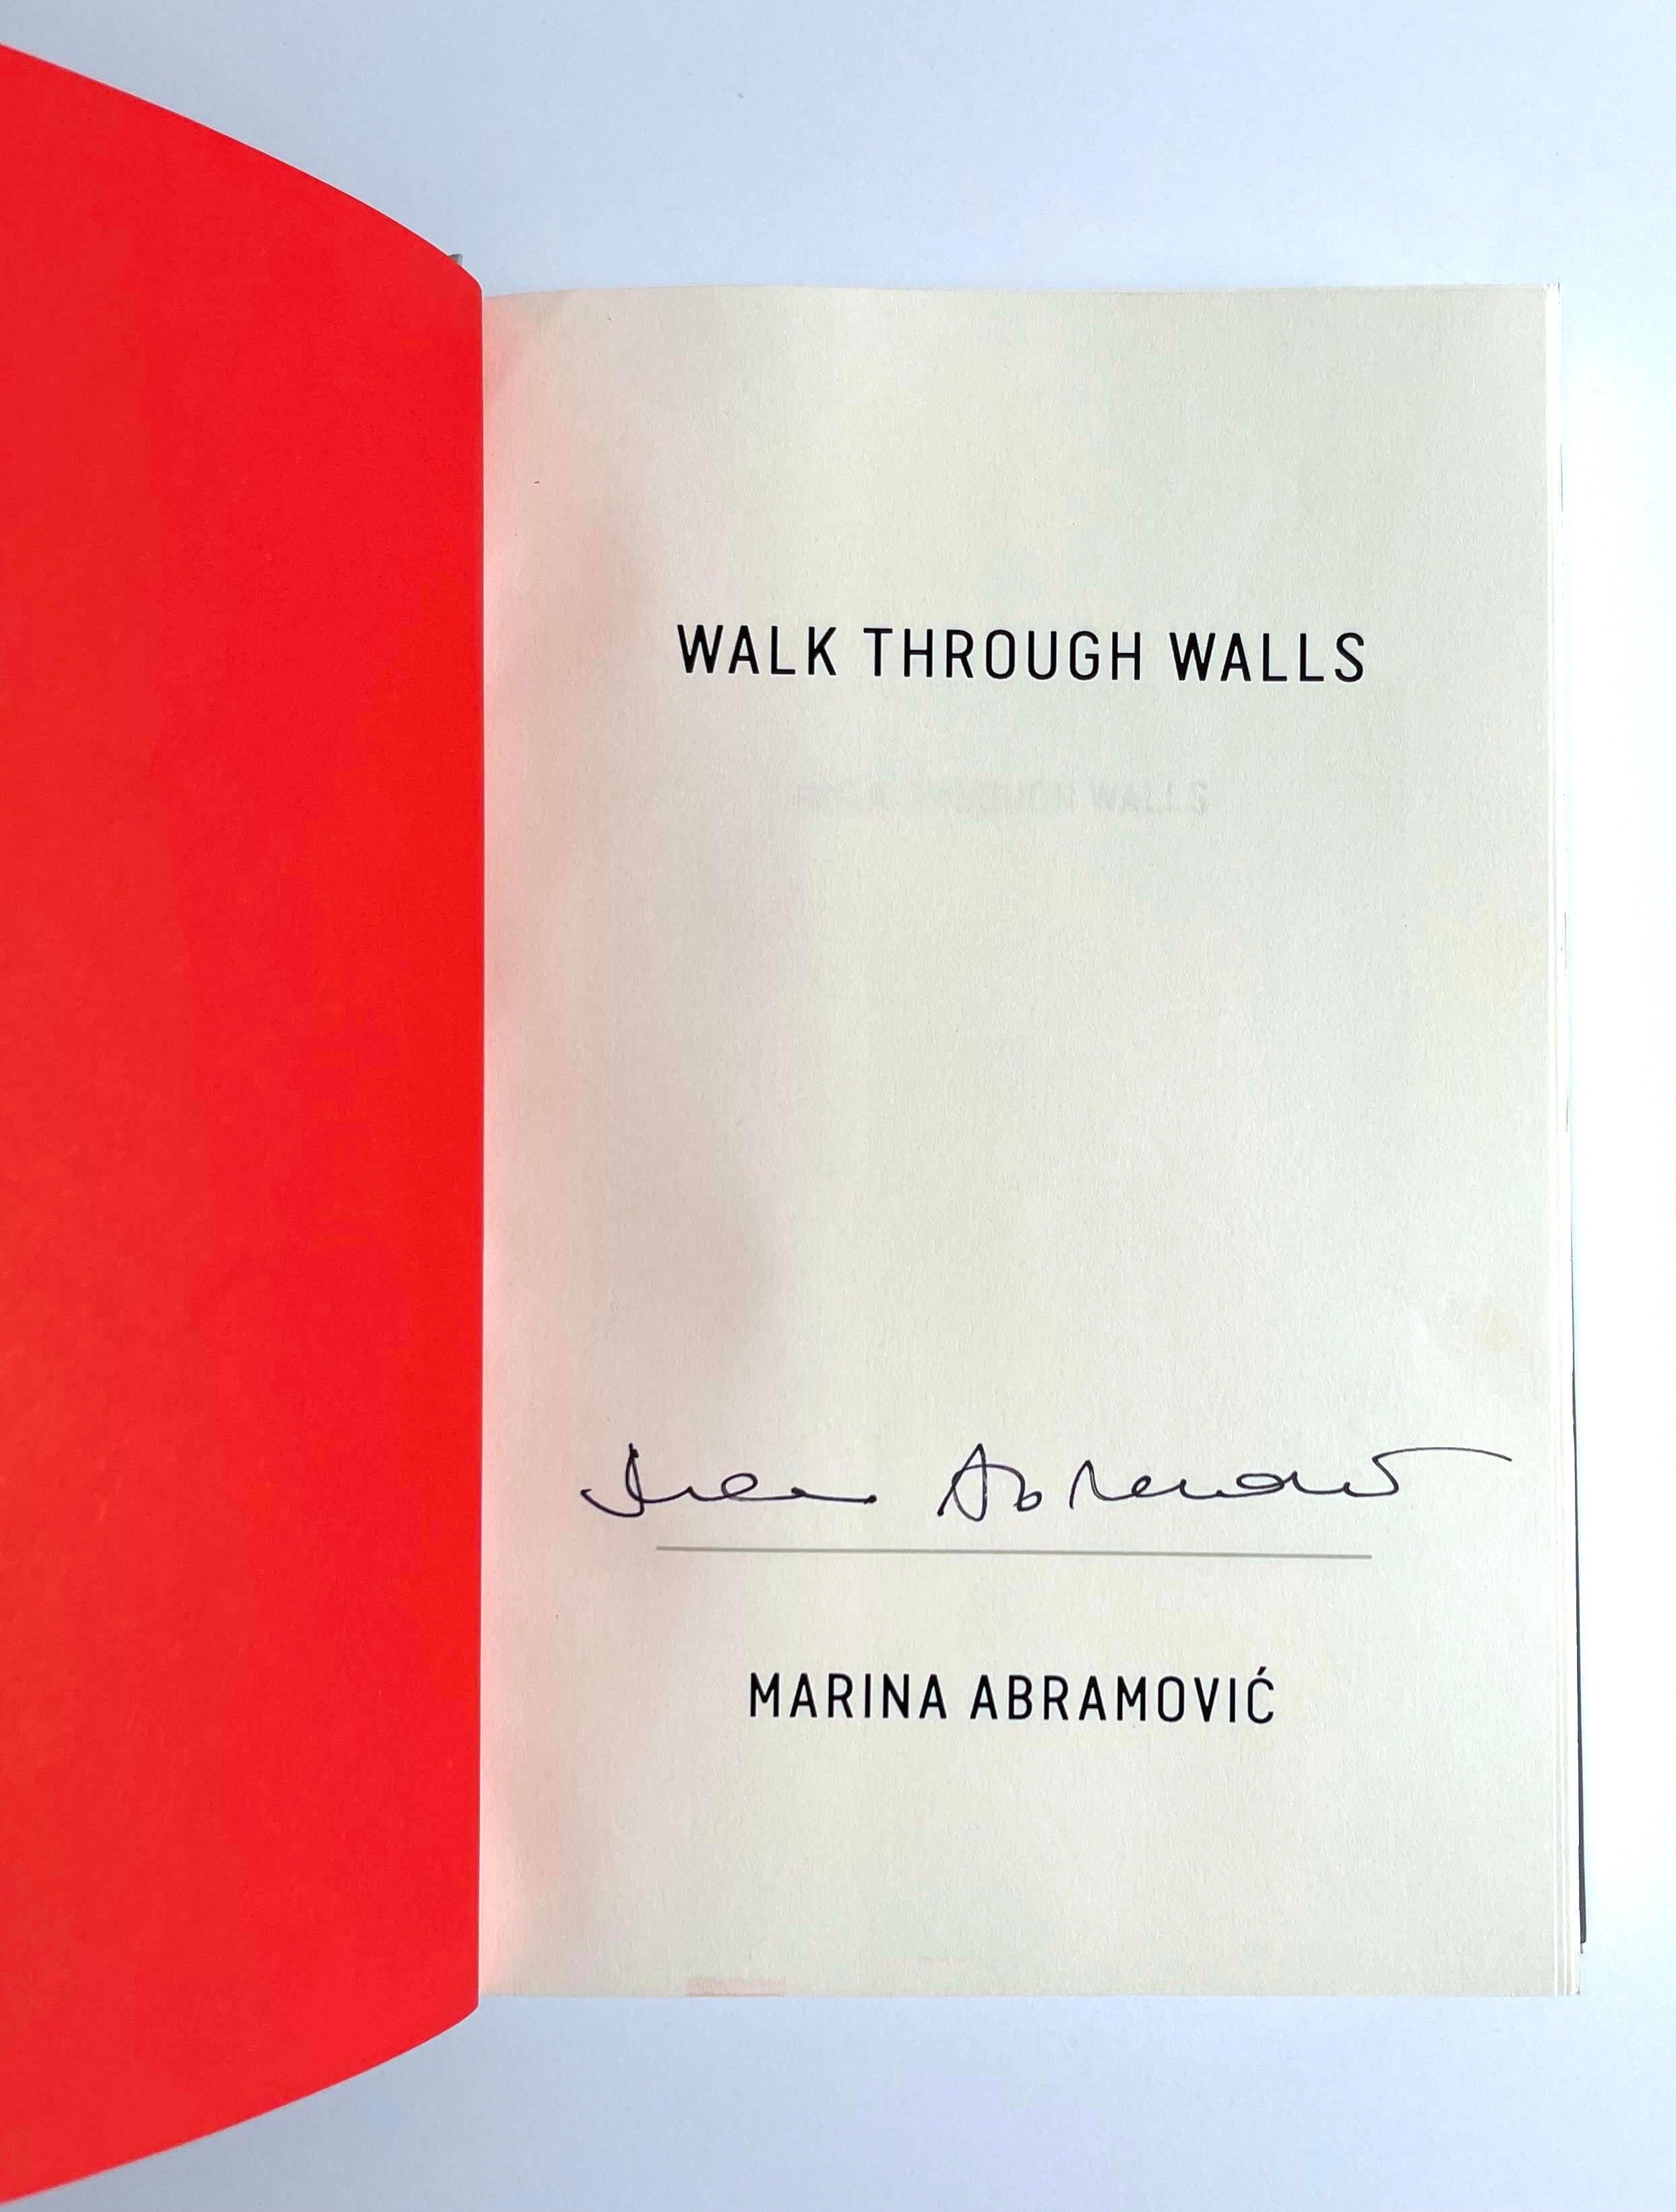 Marina Abramović
Walk Through Walls : A Memoir (offiziell handsigniertes Exemplar), 2016
Erstausgabe der gebundenen Monografie, vom Künstler handsigniert und mit dem Stempel 